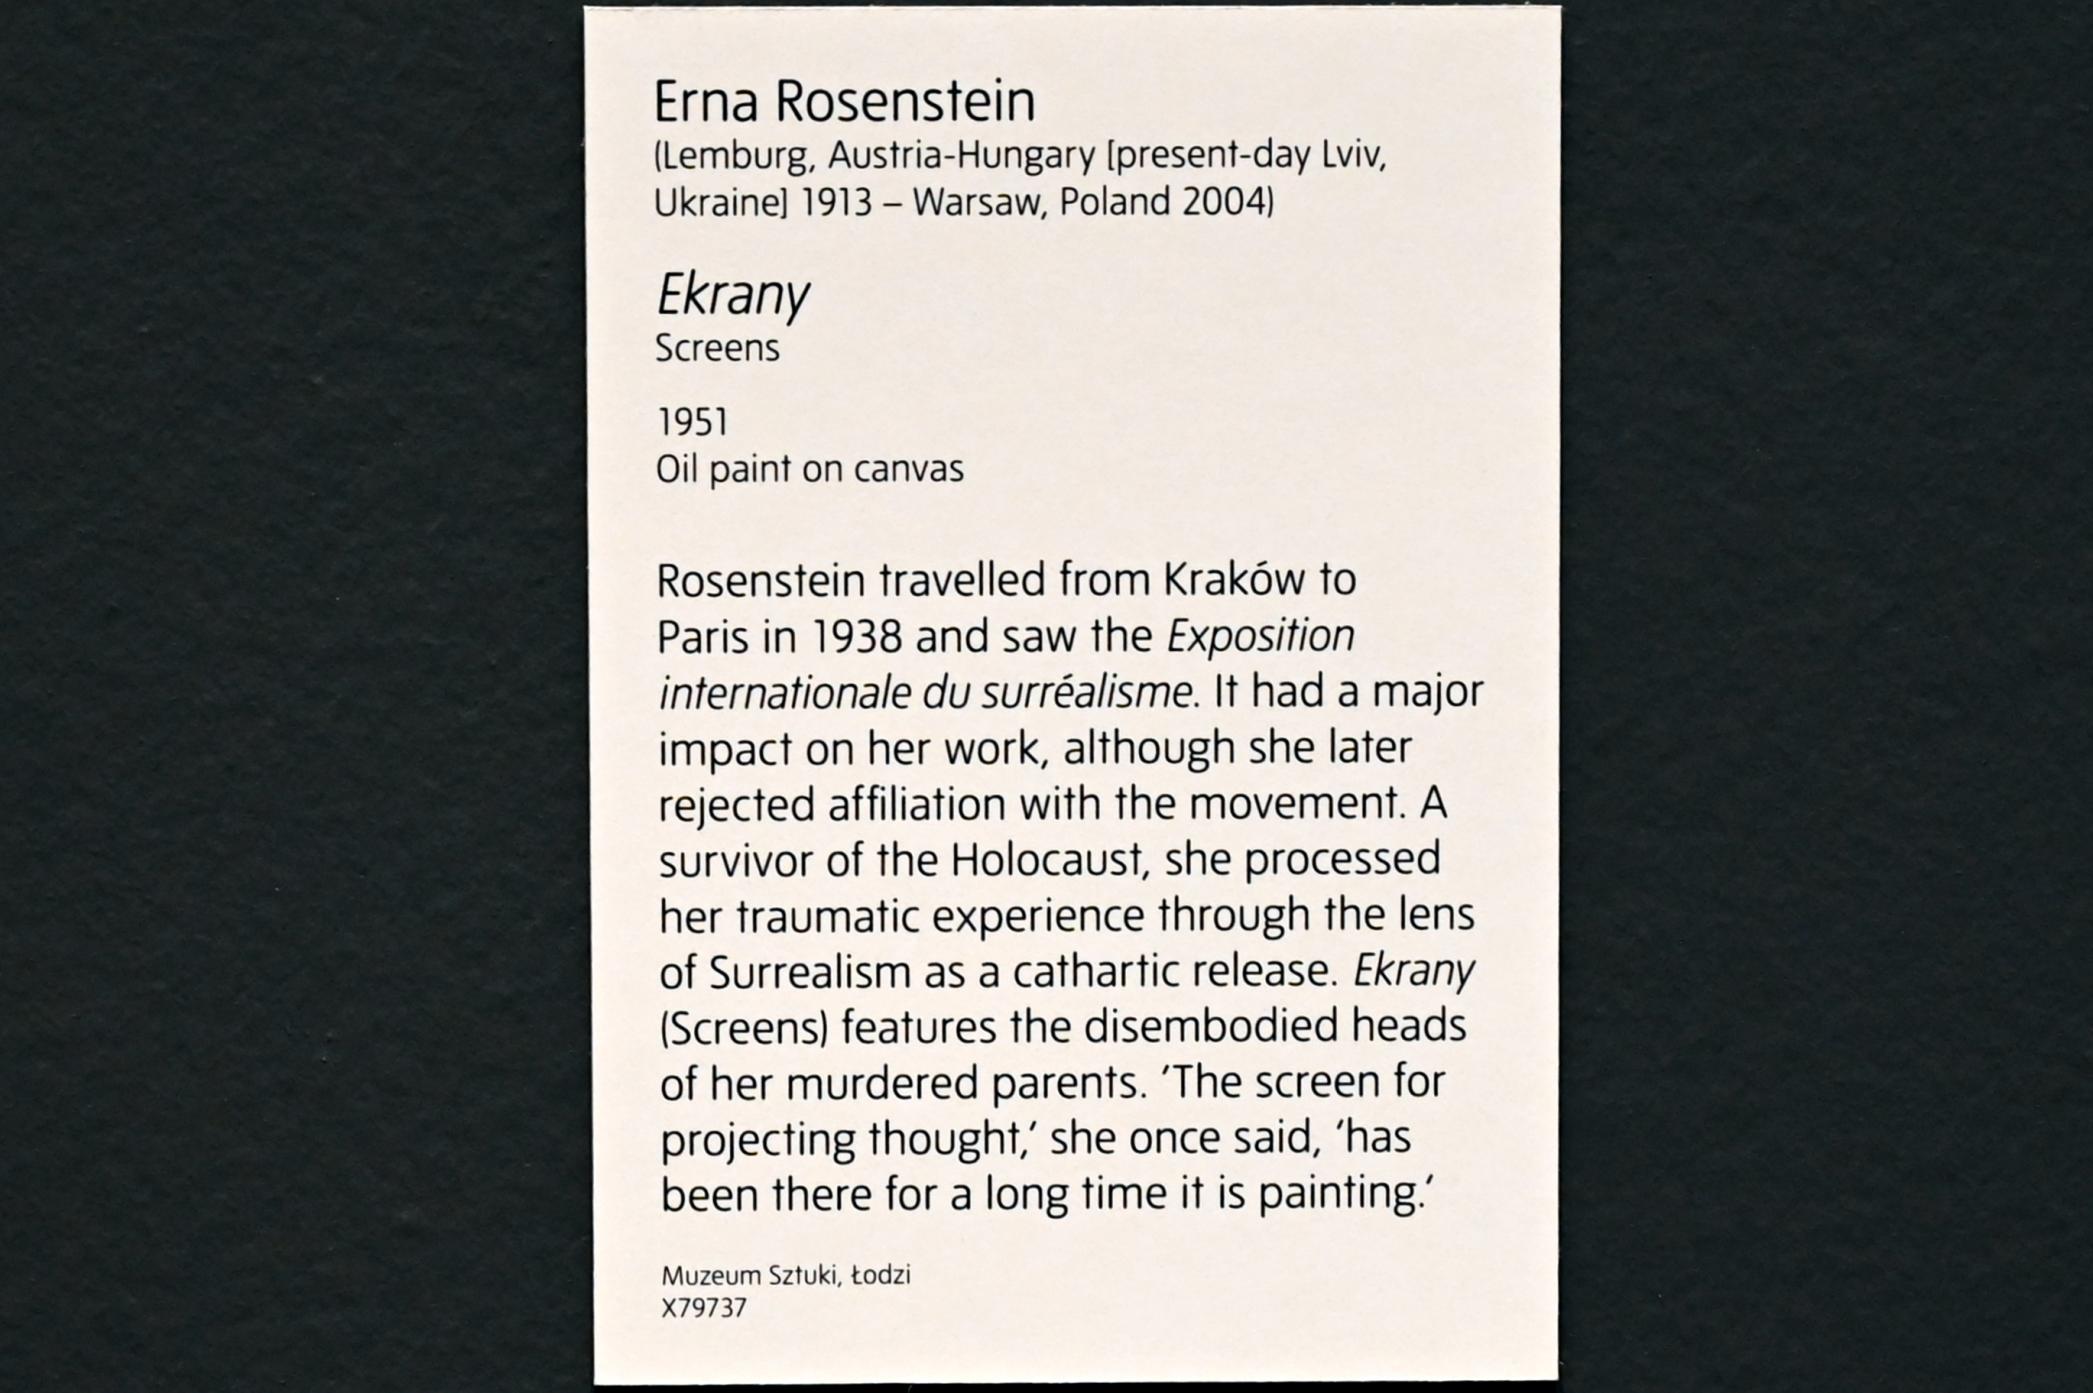 Erna Rosenstein (1951), Bildschirme, London, Tate Modern, Ausstellung "Surrealism Beyond Borders" vom 24.02.-29.08.2022, Saal 3, 1951, Bild 2/2